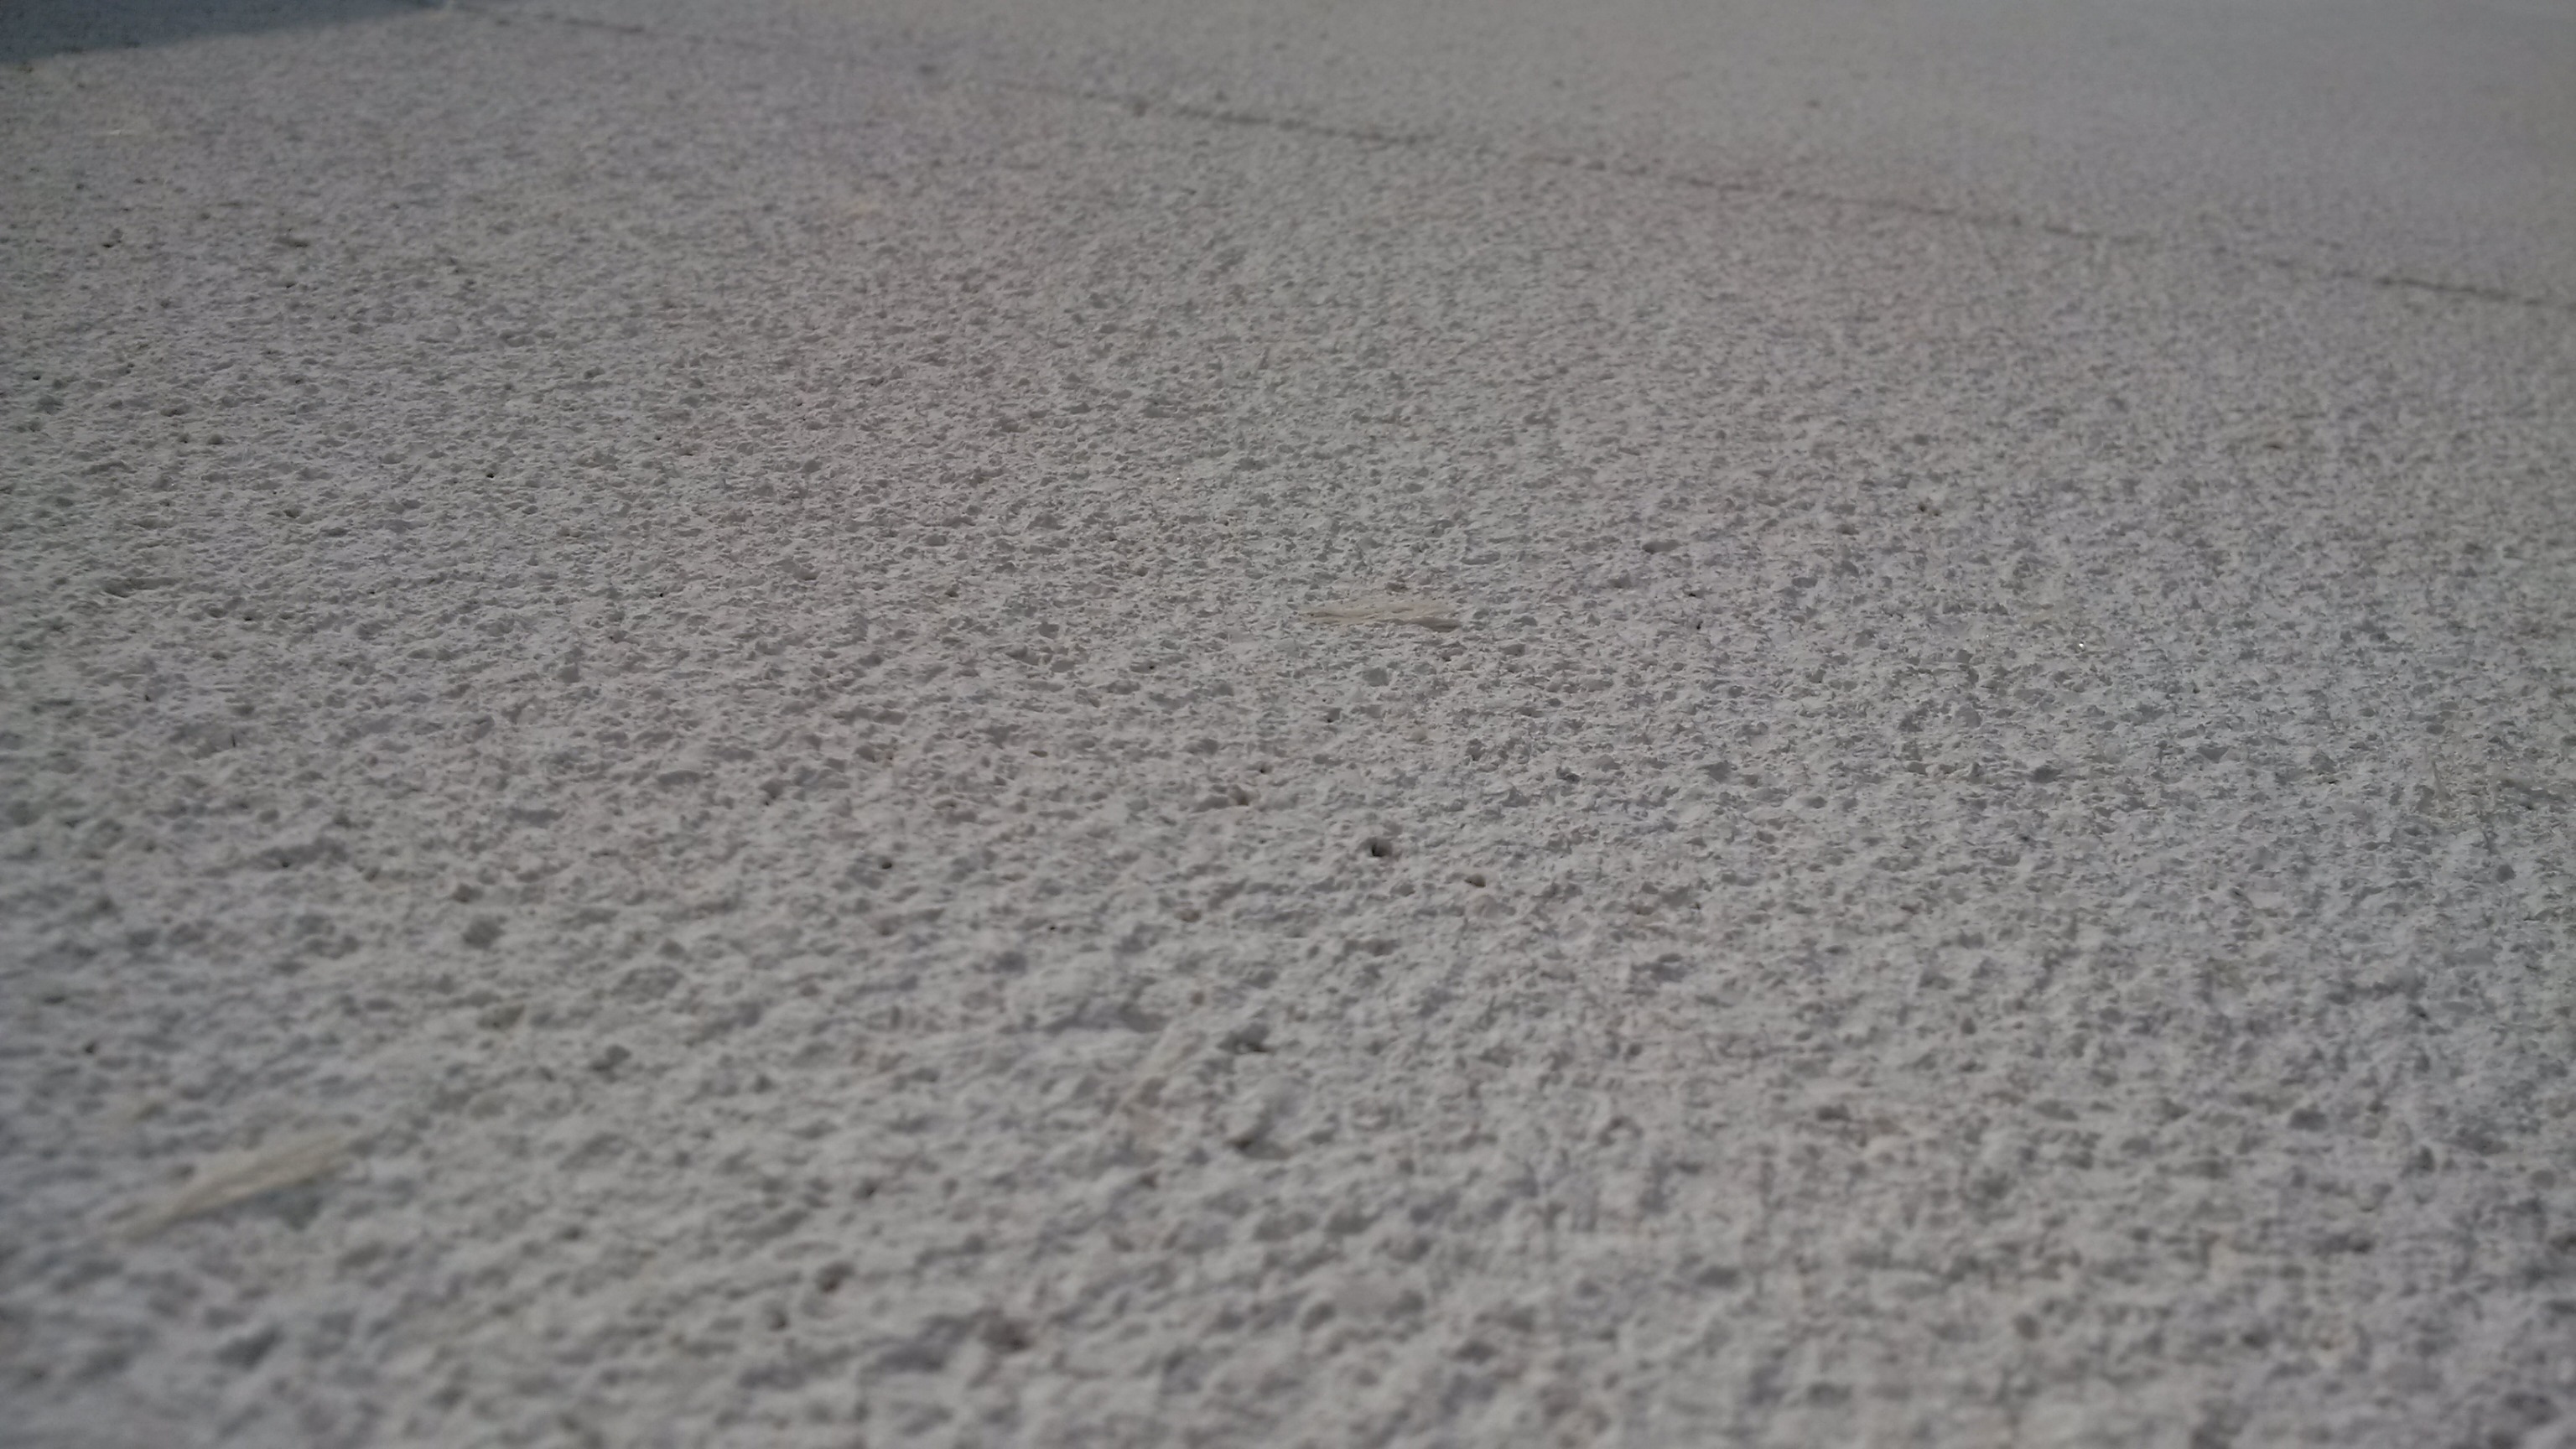 CEMEX CoolirCUSTOM dekorativni beton obrada površine štokovanjem Bol